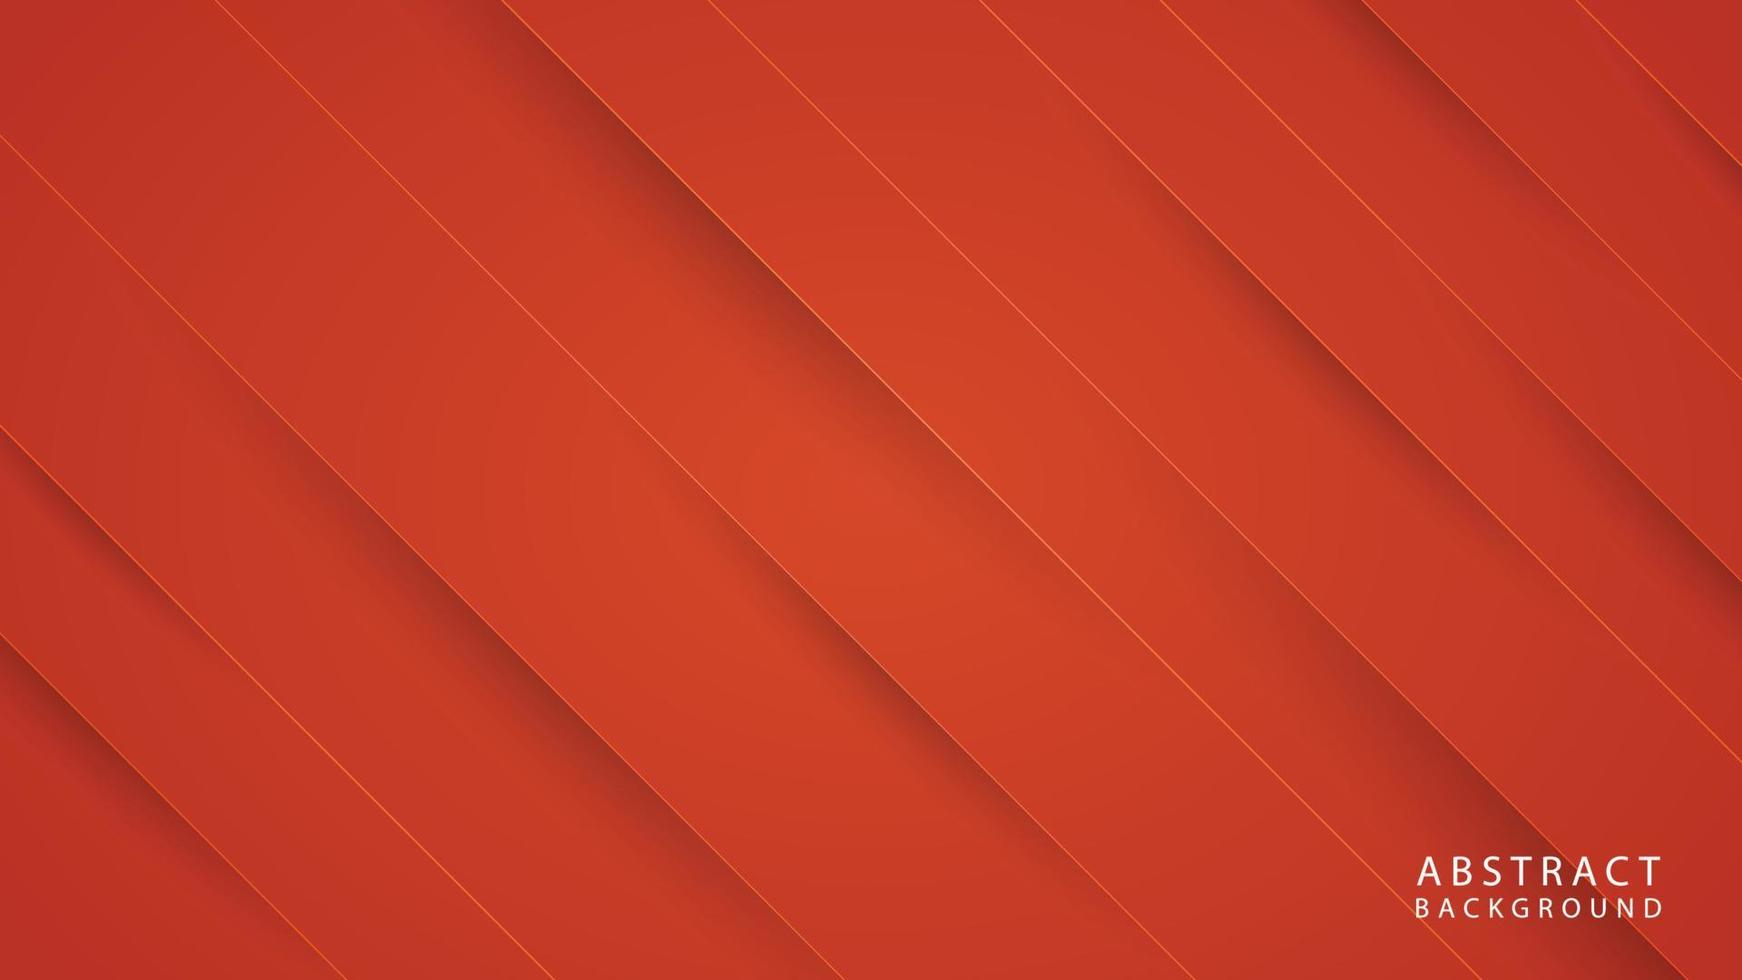 abstrakte geometrische Linienformen auf orangefarbenem Hintergrund vektor